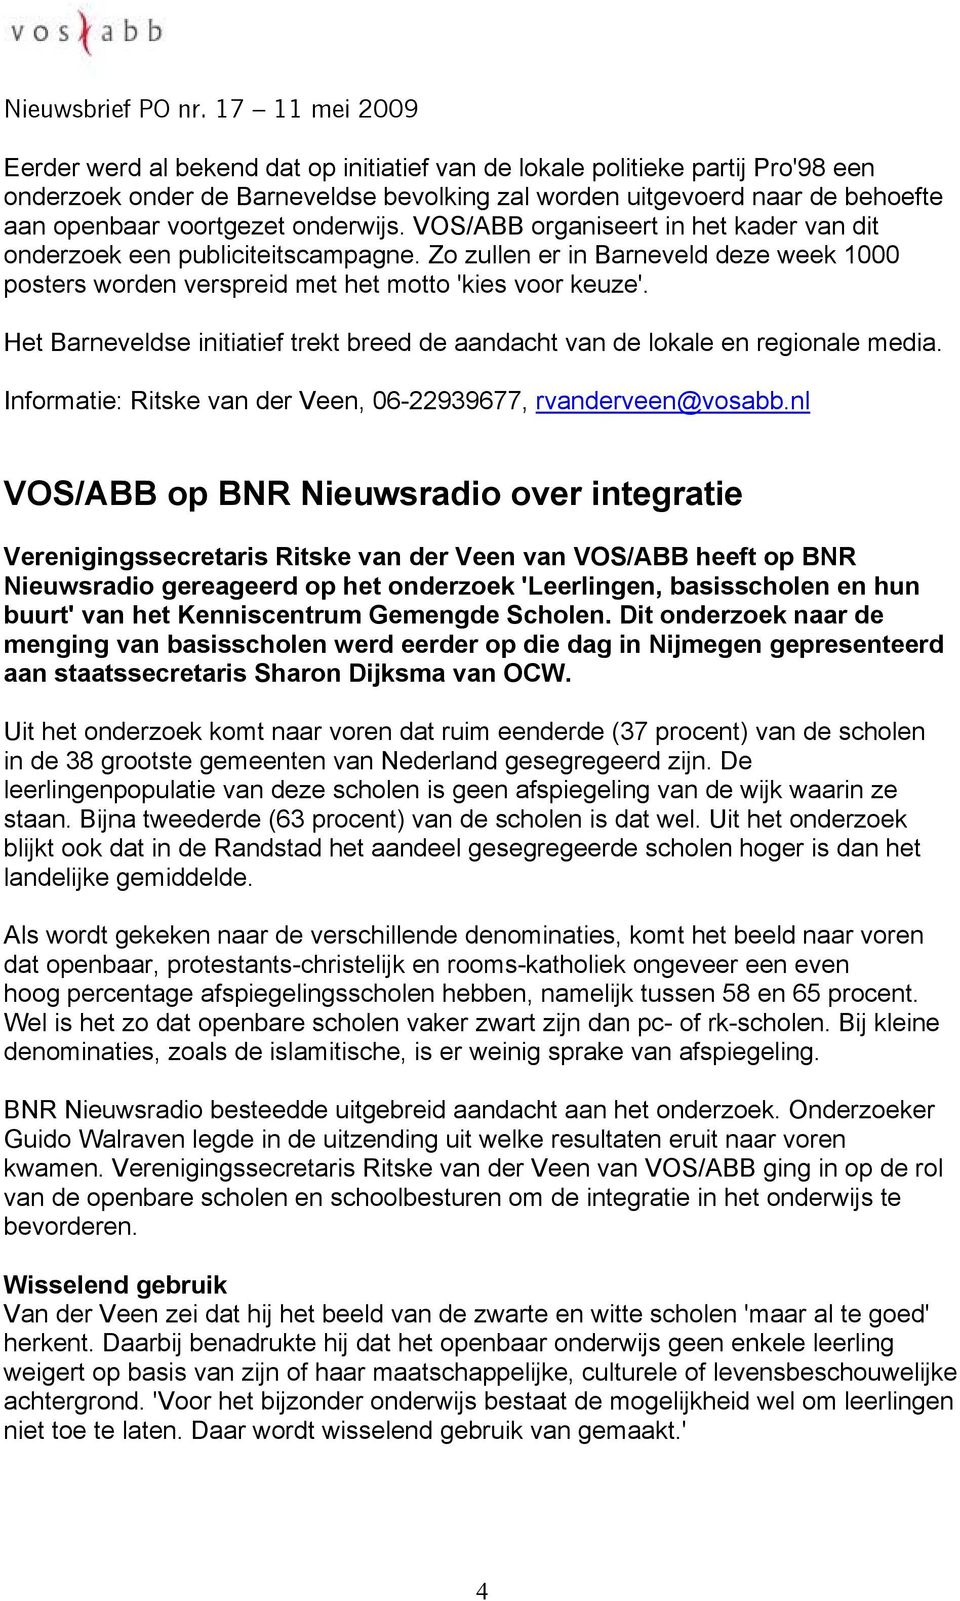 Het Barneveldse initiatief trekt breed de aandacht van de lokale en regionale media. Informatie: Ritske van der Veen, 06-22939677, rvanderveen@vosabb.